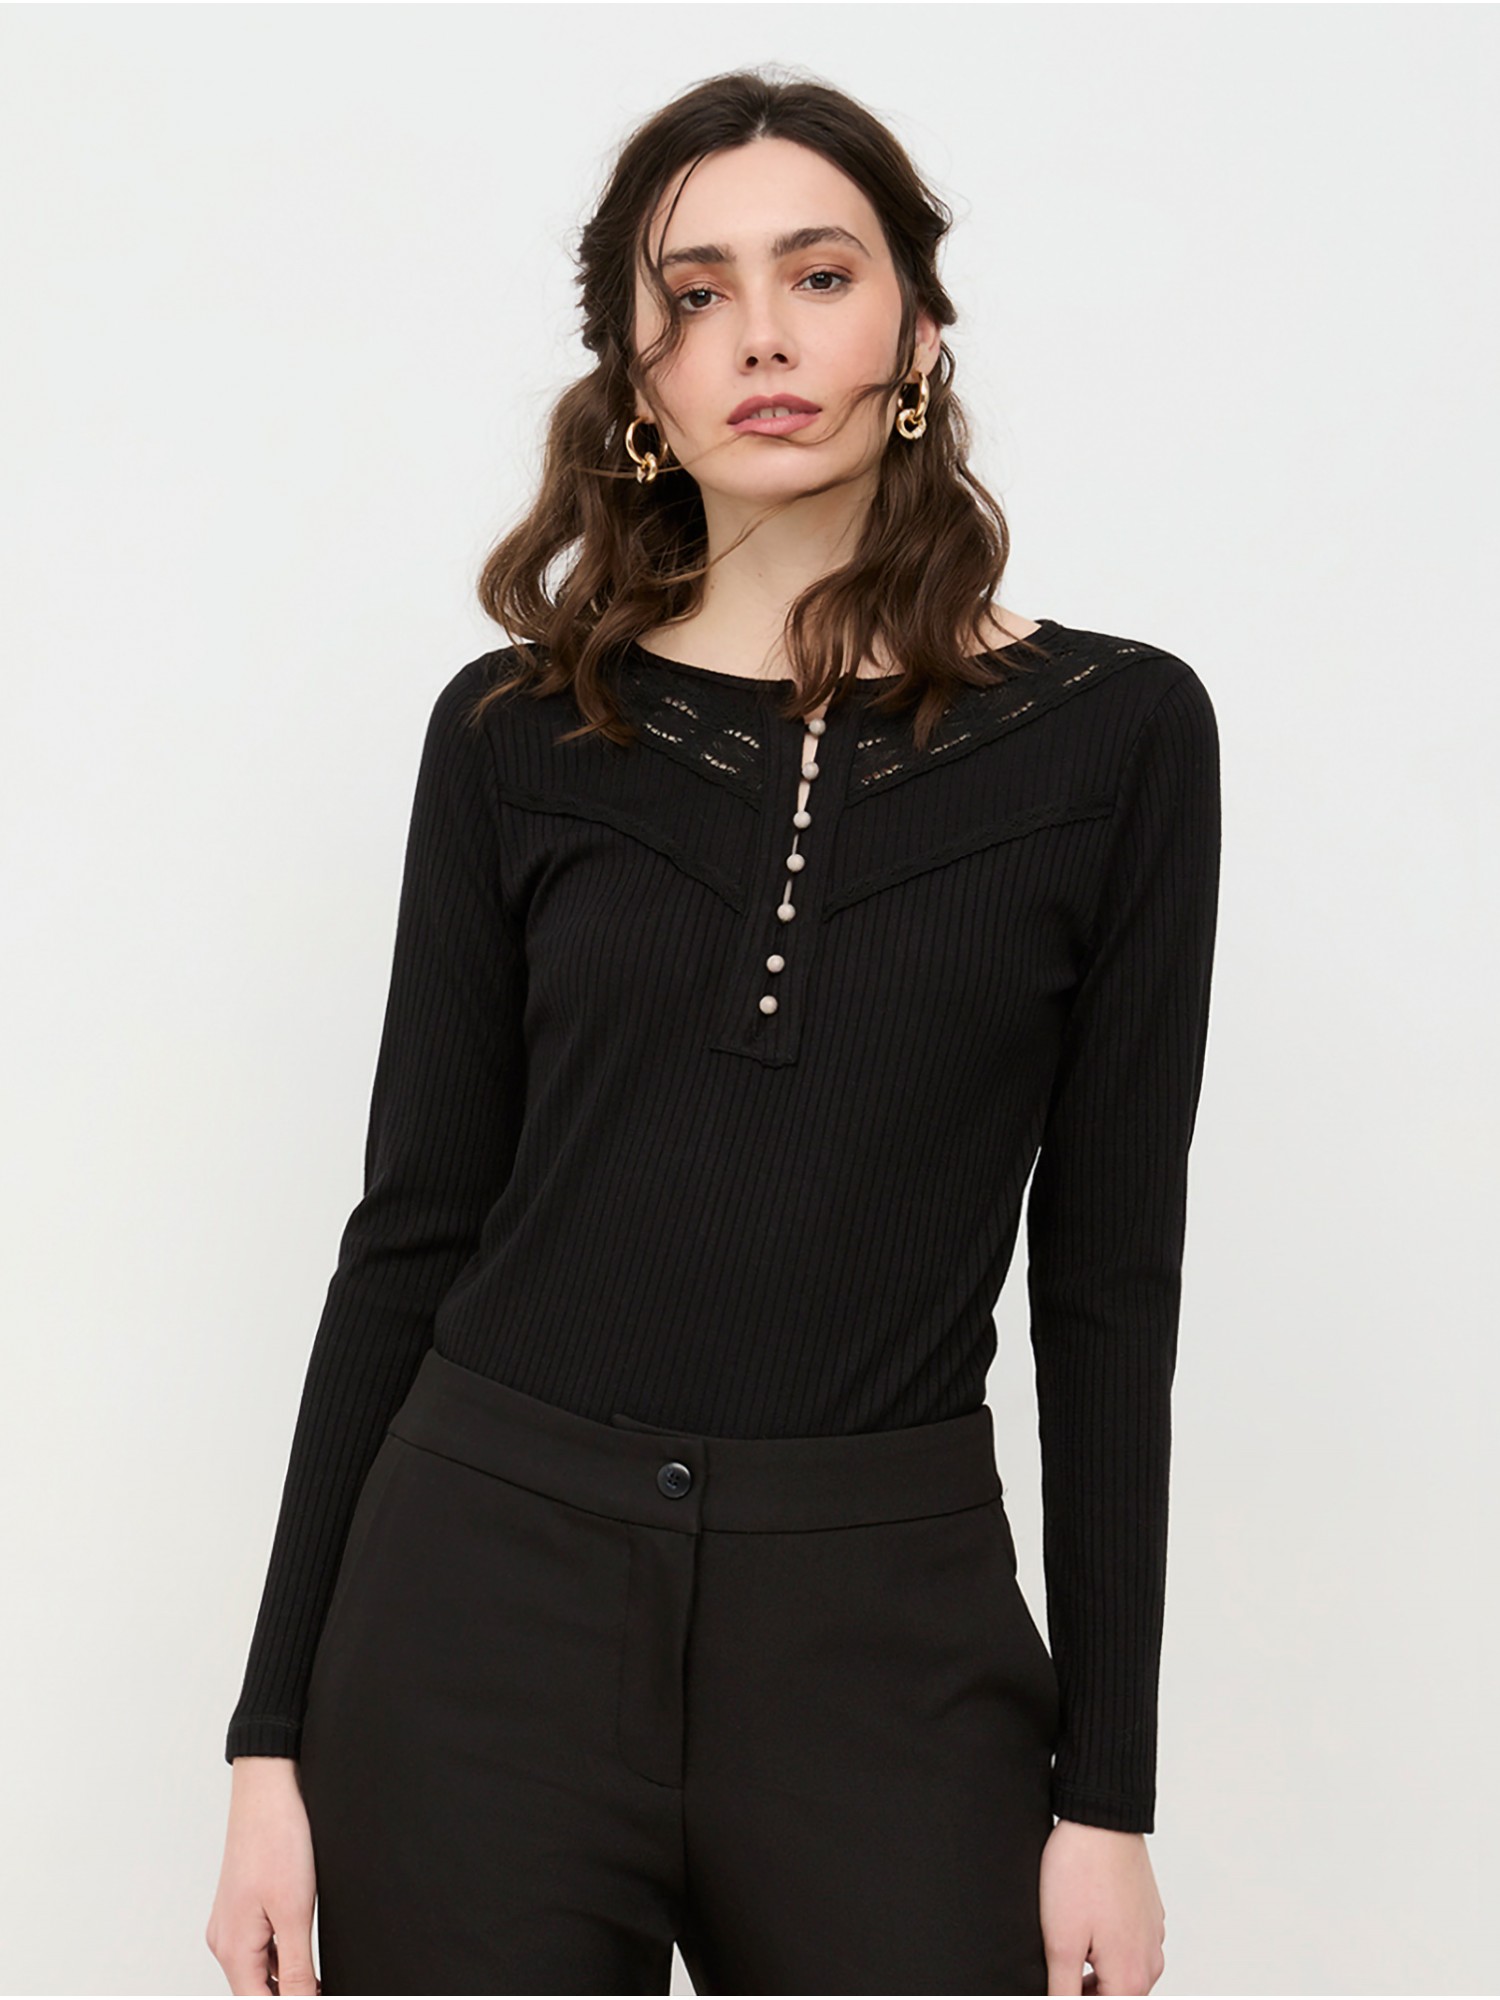 Camiseta Casmara Nüd by Nekane en shop candelascloset. Color negro, abotonada en escote y encaje en el cuello para mujer.